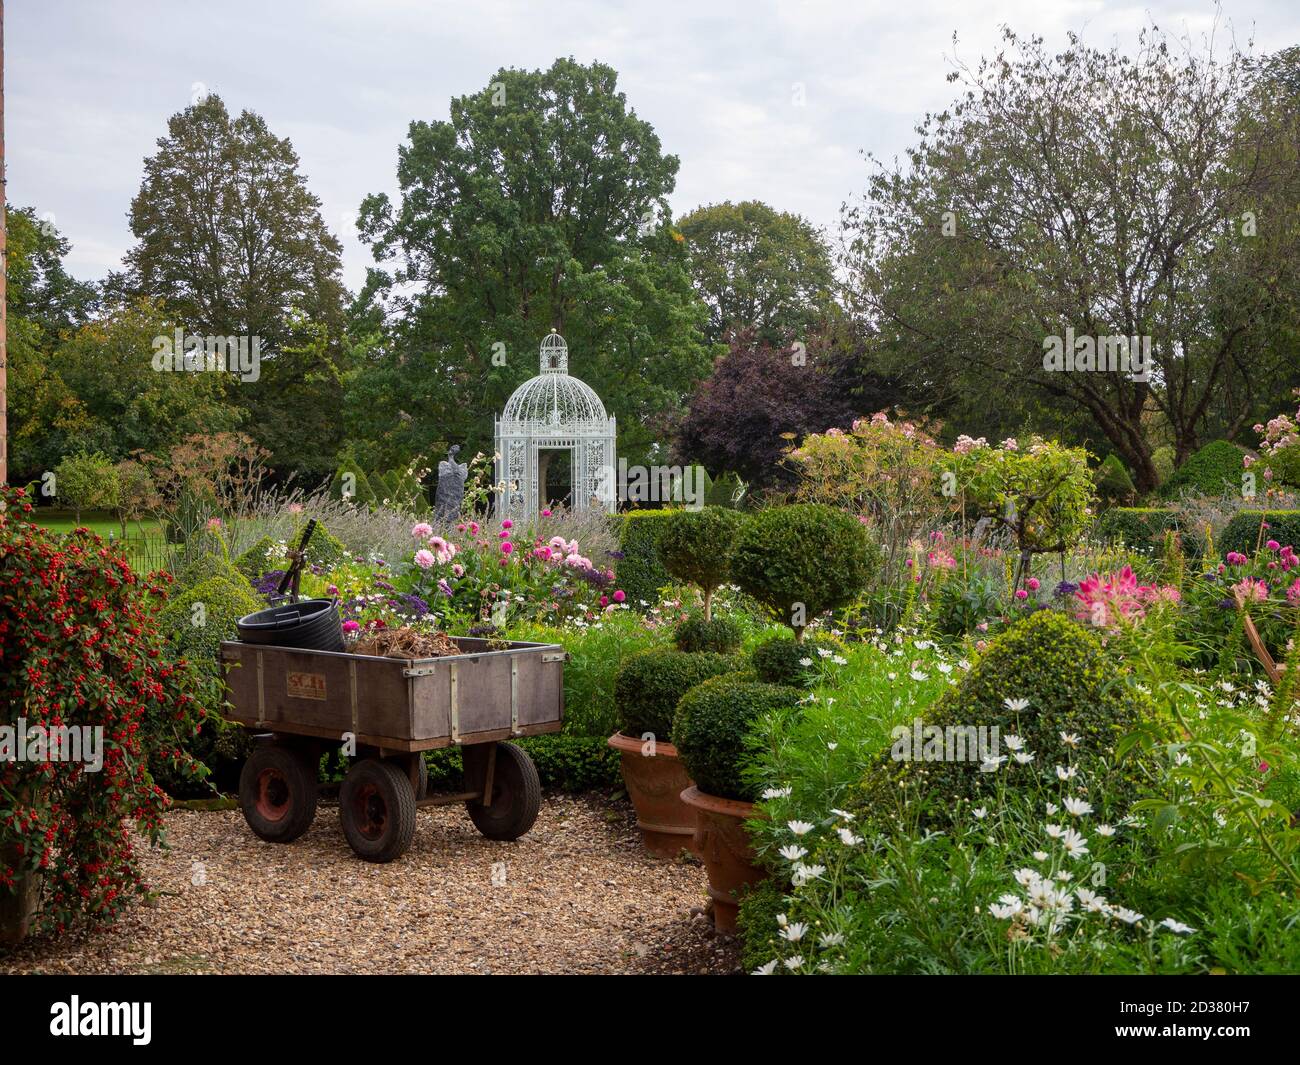 Chenies Manor giardino. Un carrello a mano si appoggia sul sentiero dopo il lavoro in giardino. Un gazebo in gabbia di uccelli nel parterre oltre i fiori rosa e bianco. Foto Stock